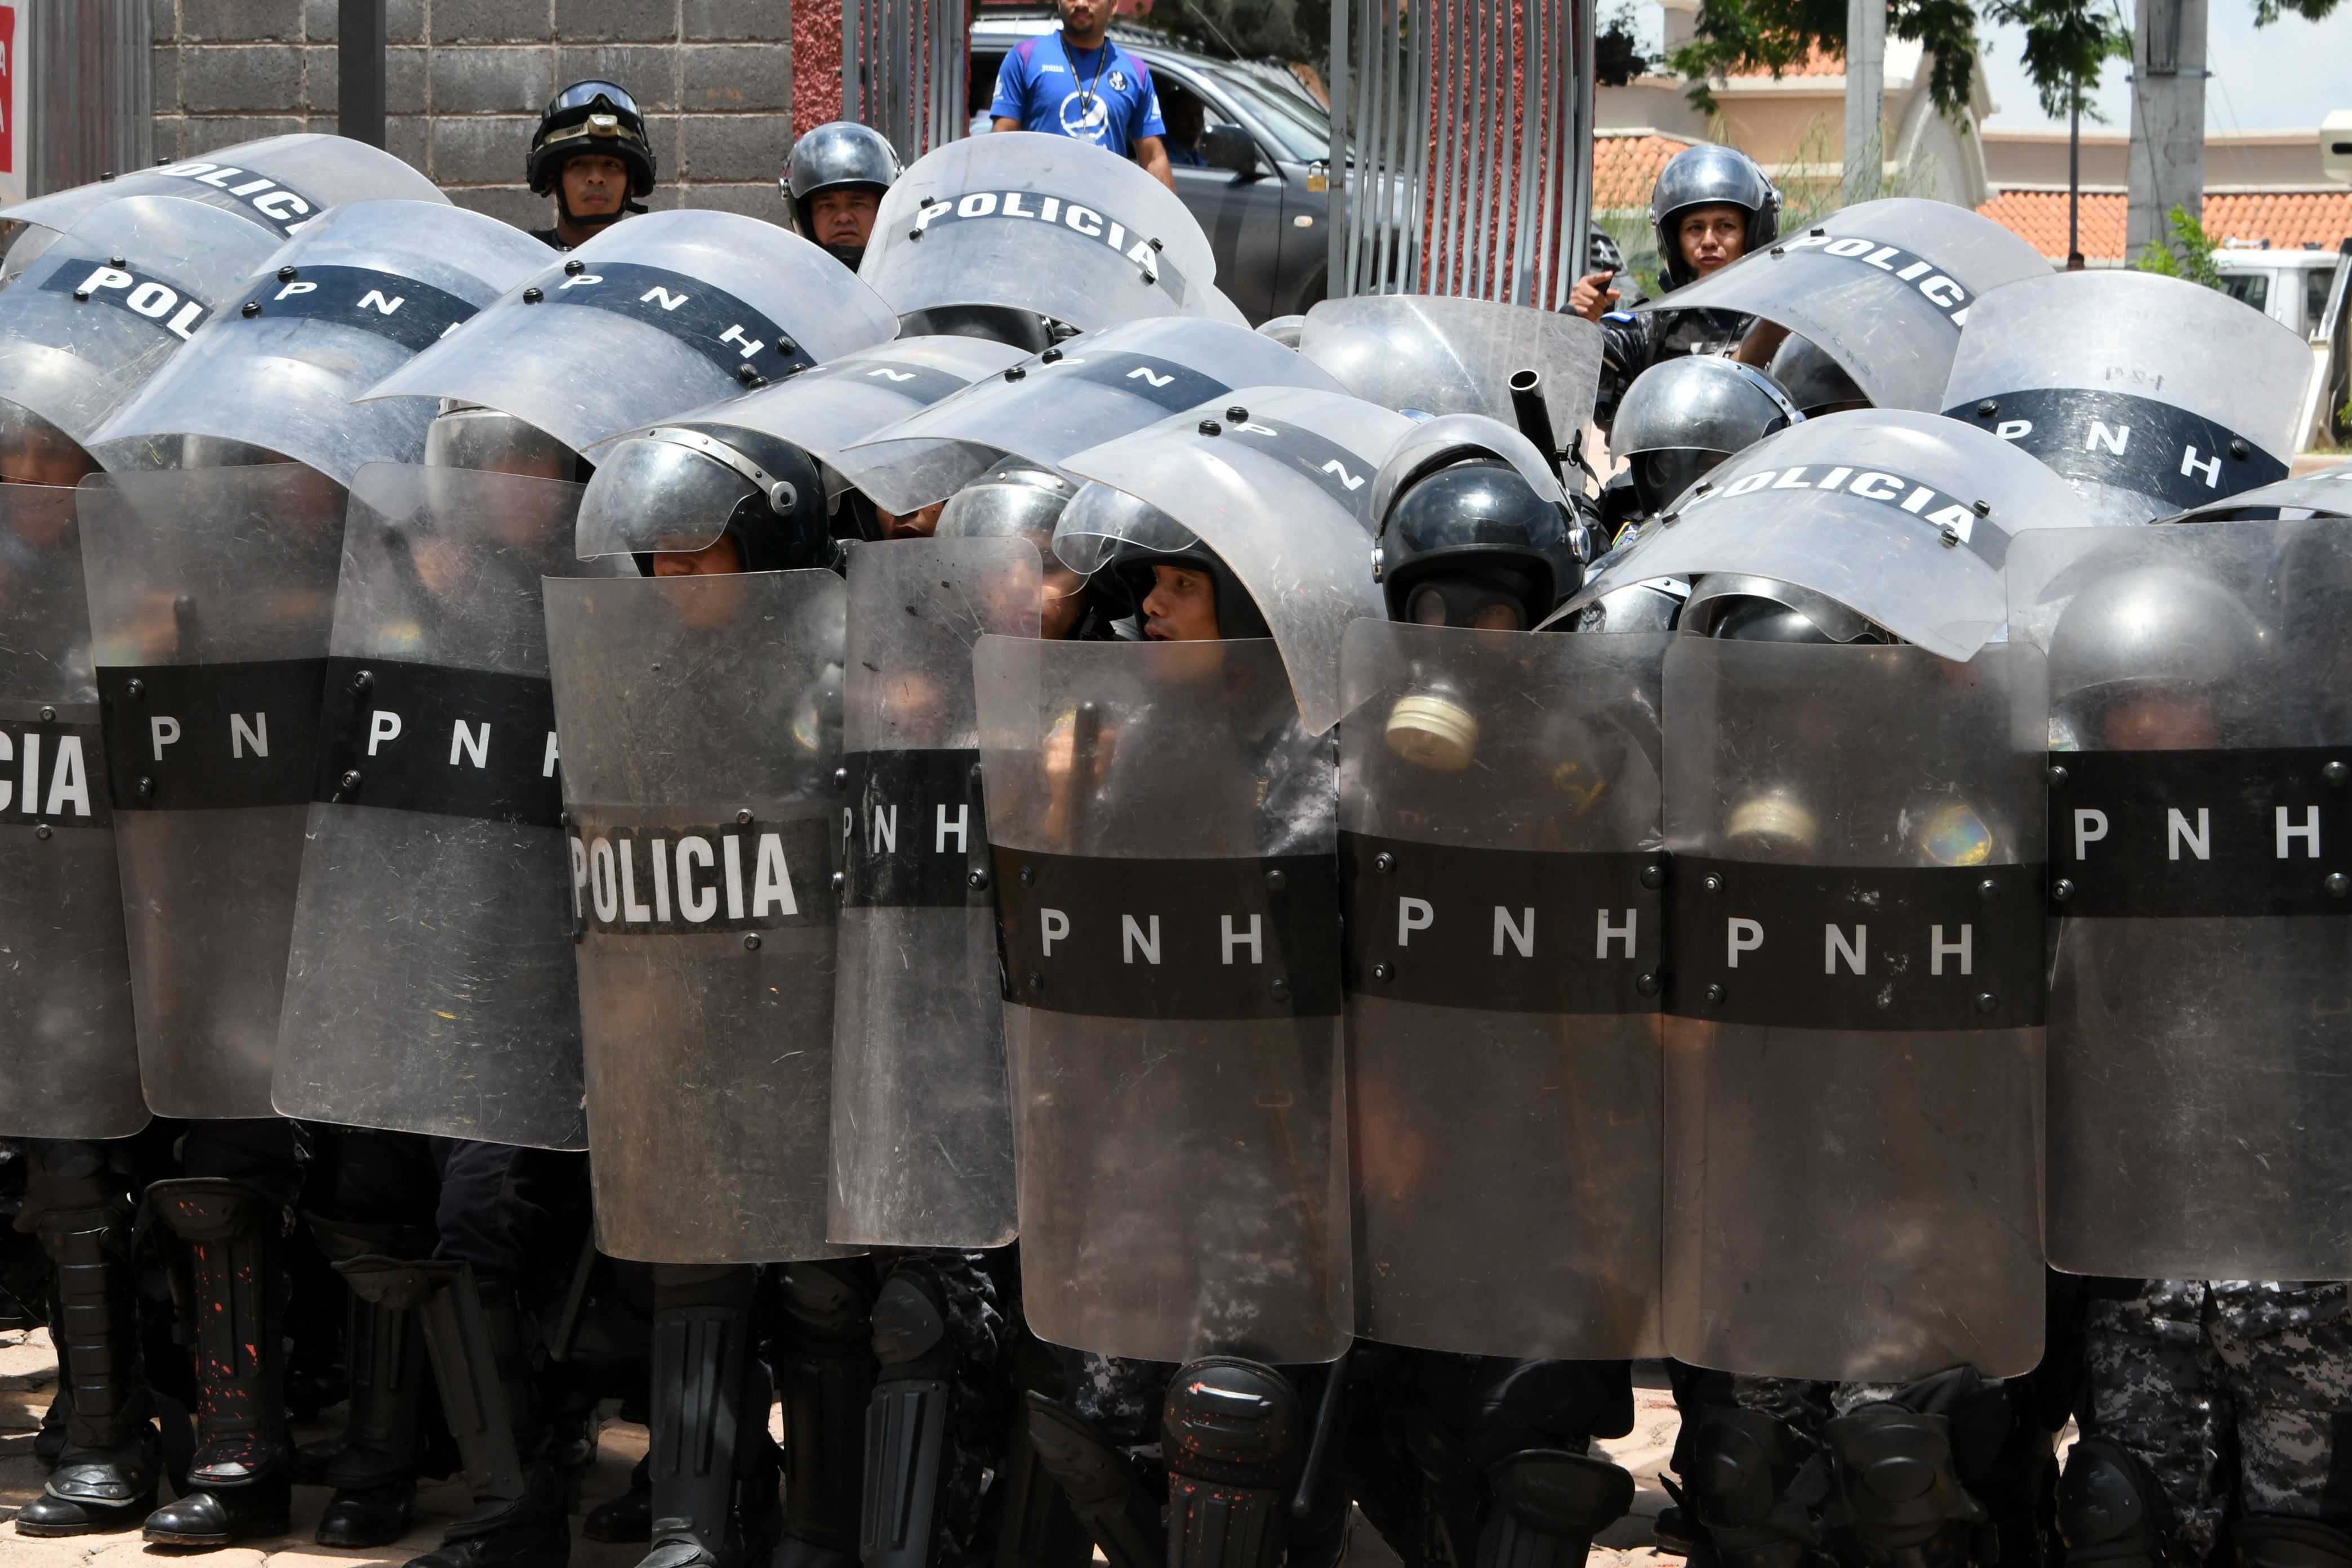 شرطة هندوراس